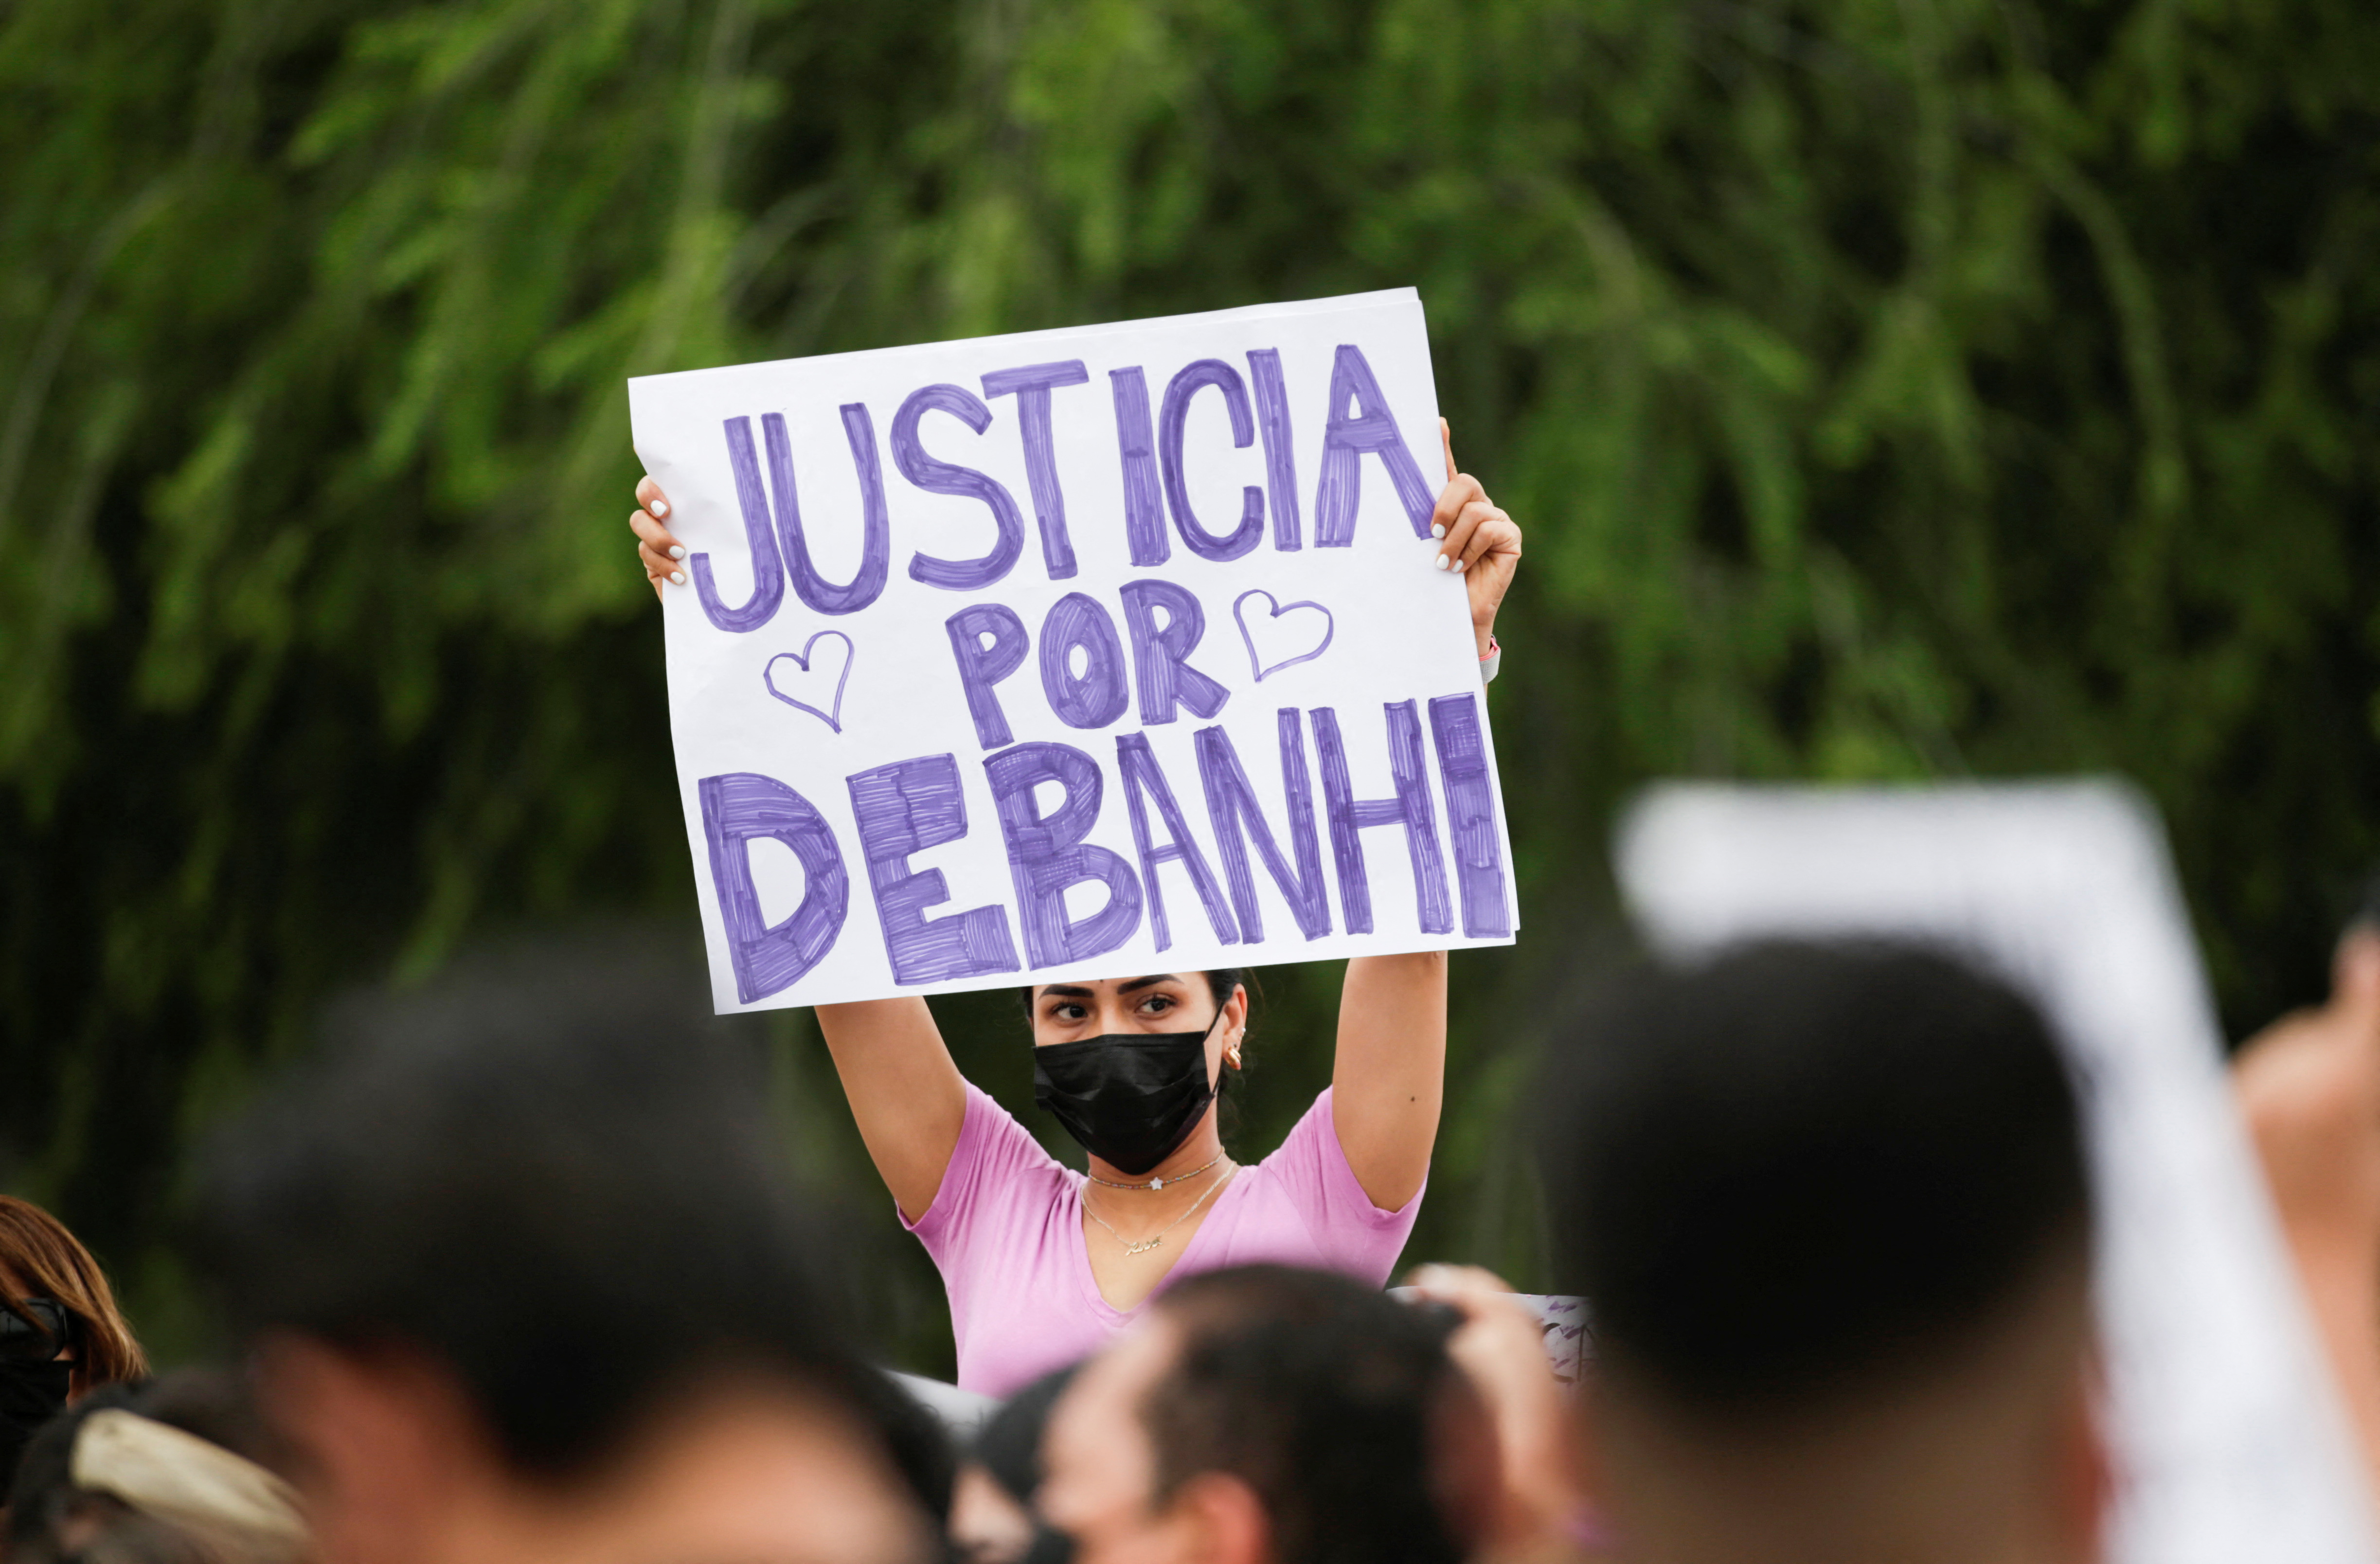 Miserables”: ex funcionarios y periodistas repudiaron segunda autopsia de Debanhi  Escobar - Infobae